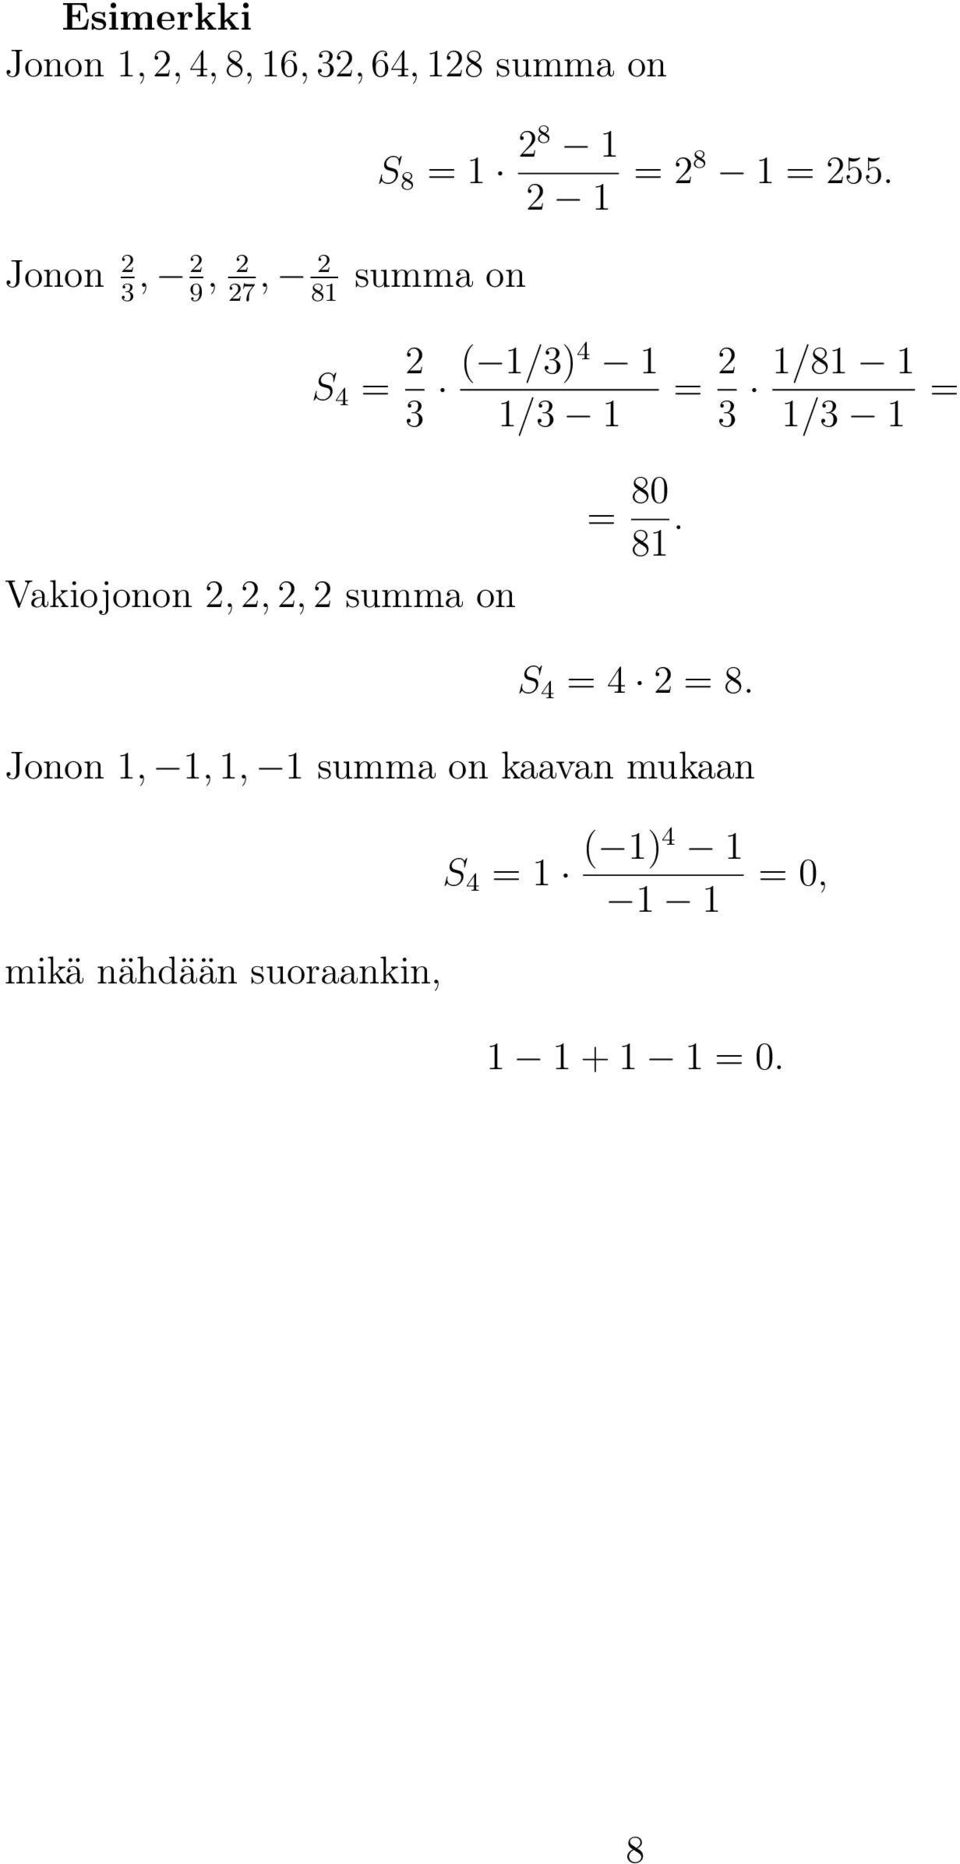 summa on S 4 = 3 ( 1/3)4 1 1/3 1 = 3 1/81 1 1/3 1 = Vakiojonon,,, summa